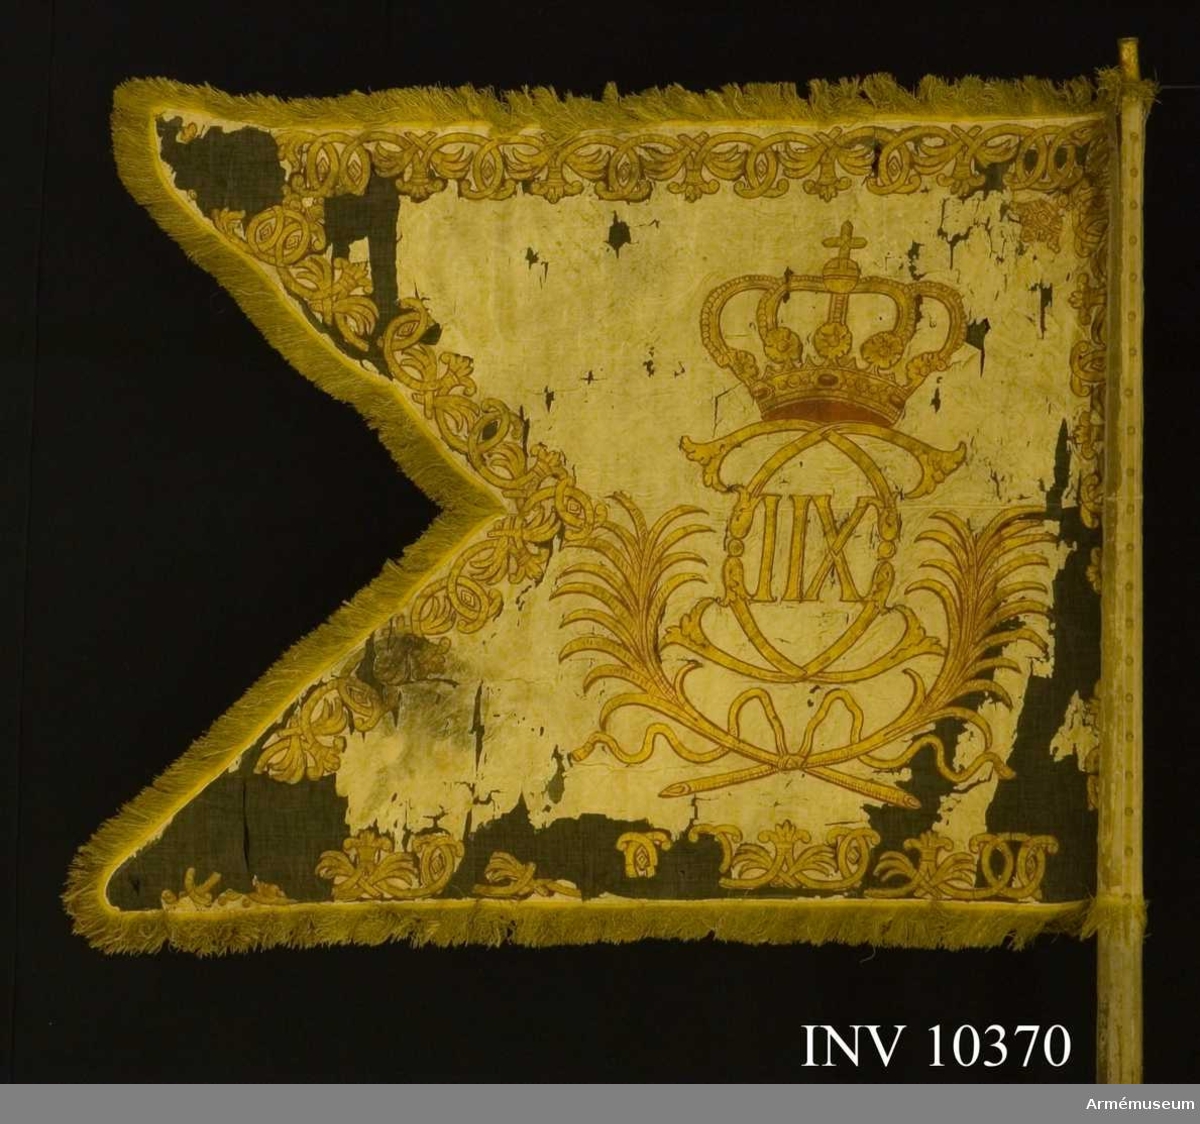 Grupp B I.
Duk med krönt Karl XII:s spegelmonogram med palmkvistar under. Bredd 116 och 76 cm.